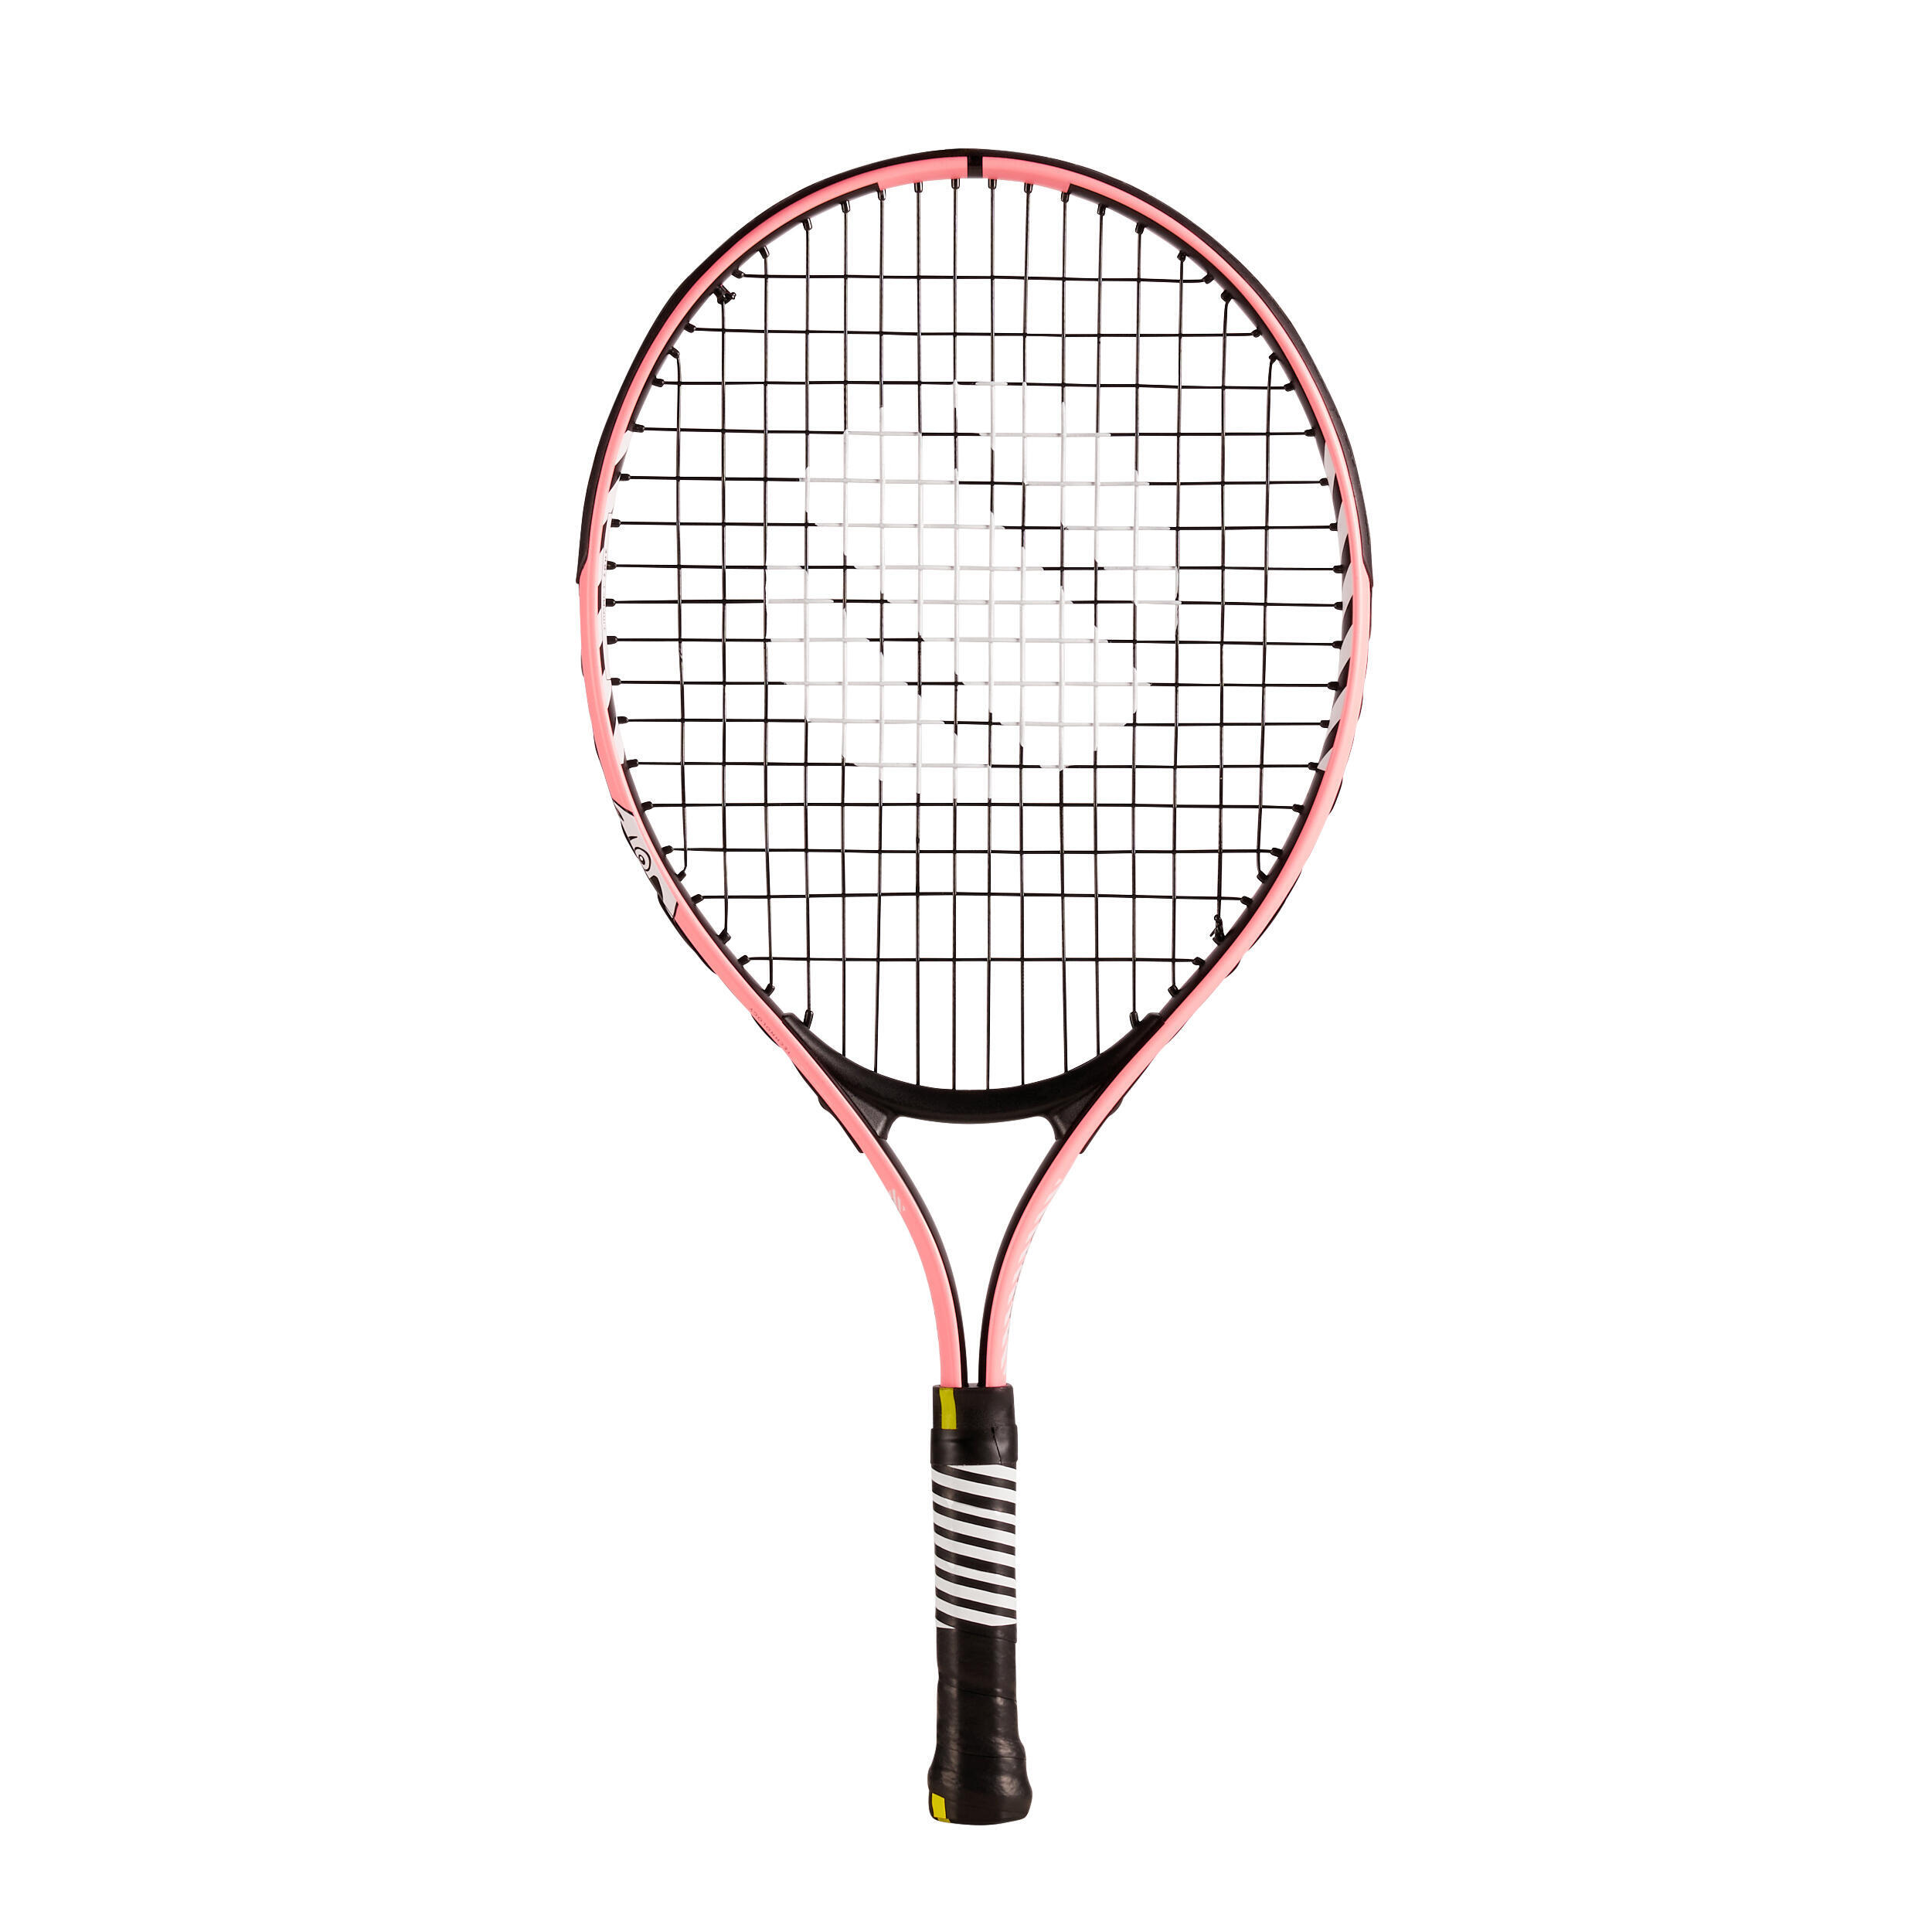 Детская теннисная ракетка - TR130 21 розовая ARTENGO, розовый/черный теннисная ракетка tr530 детская 23 artengo